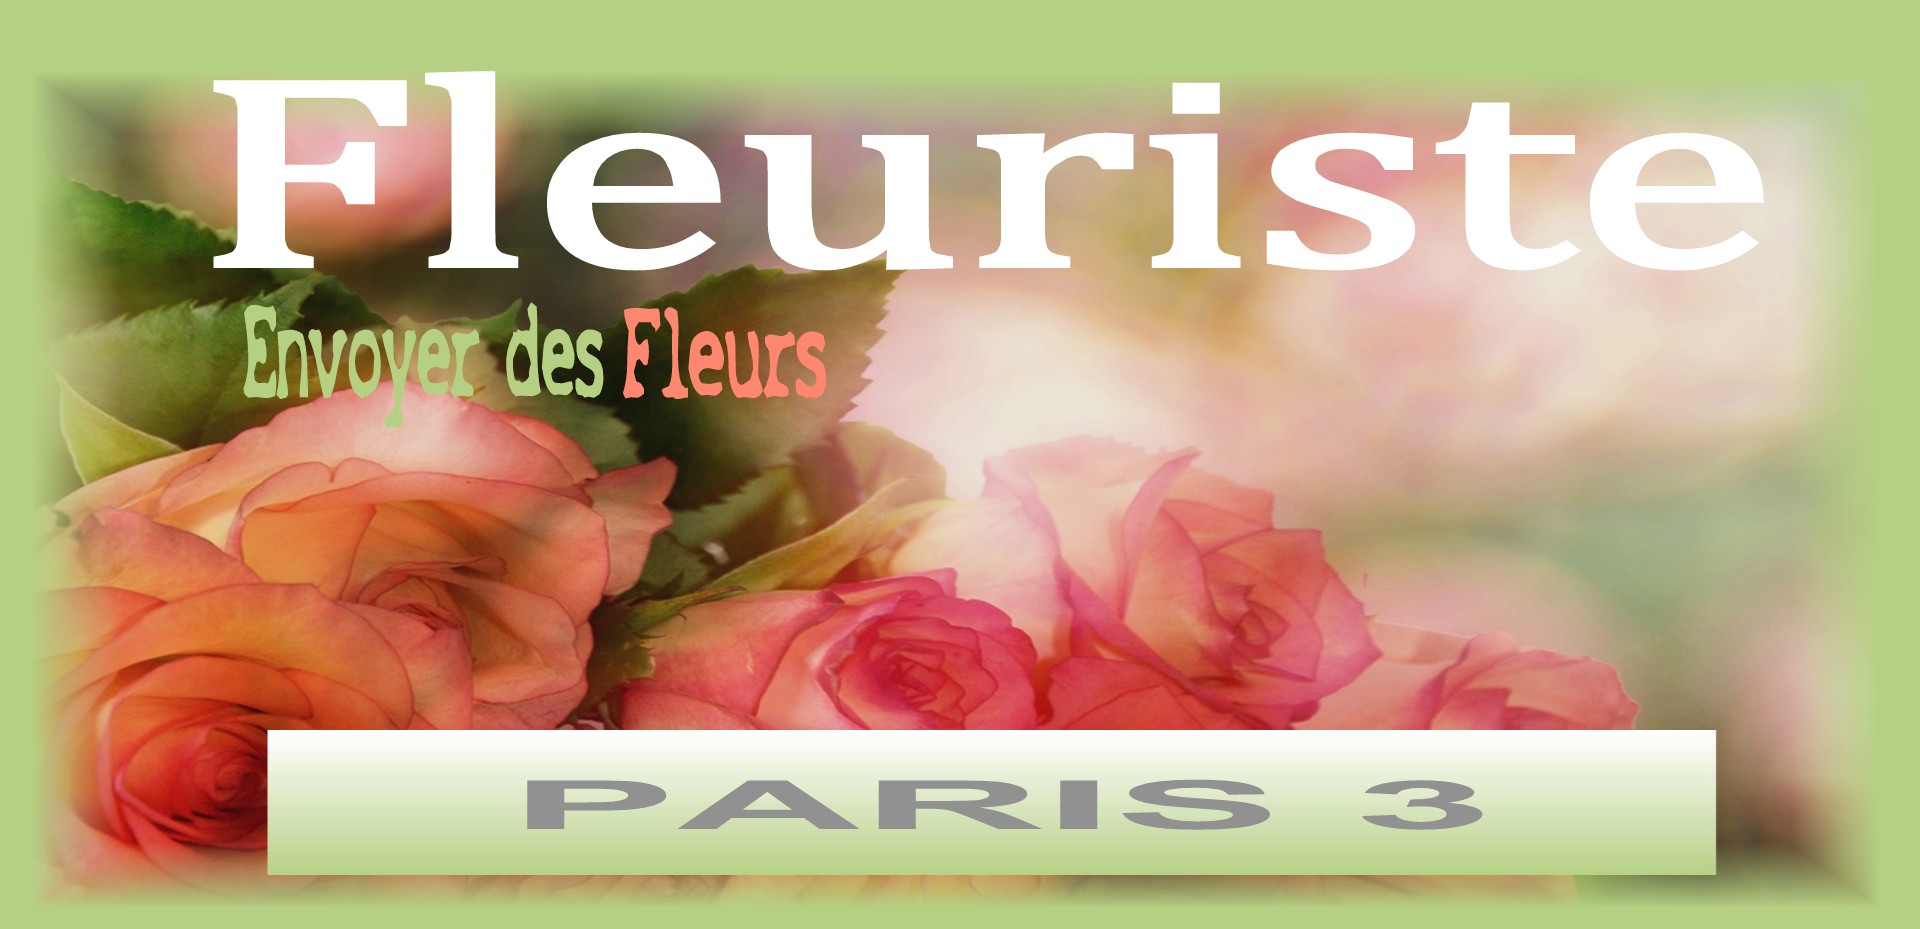 Nos fleuristes livrent des fleurs à PARIS 3 - Envoyer des fleurs